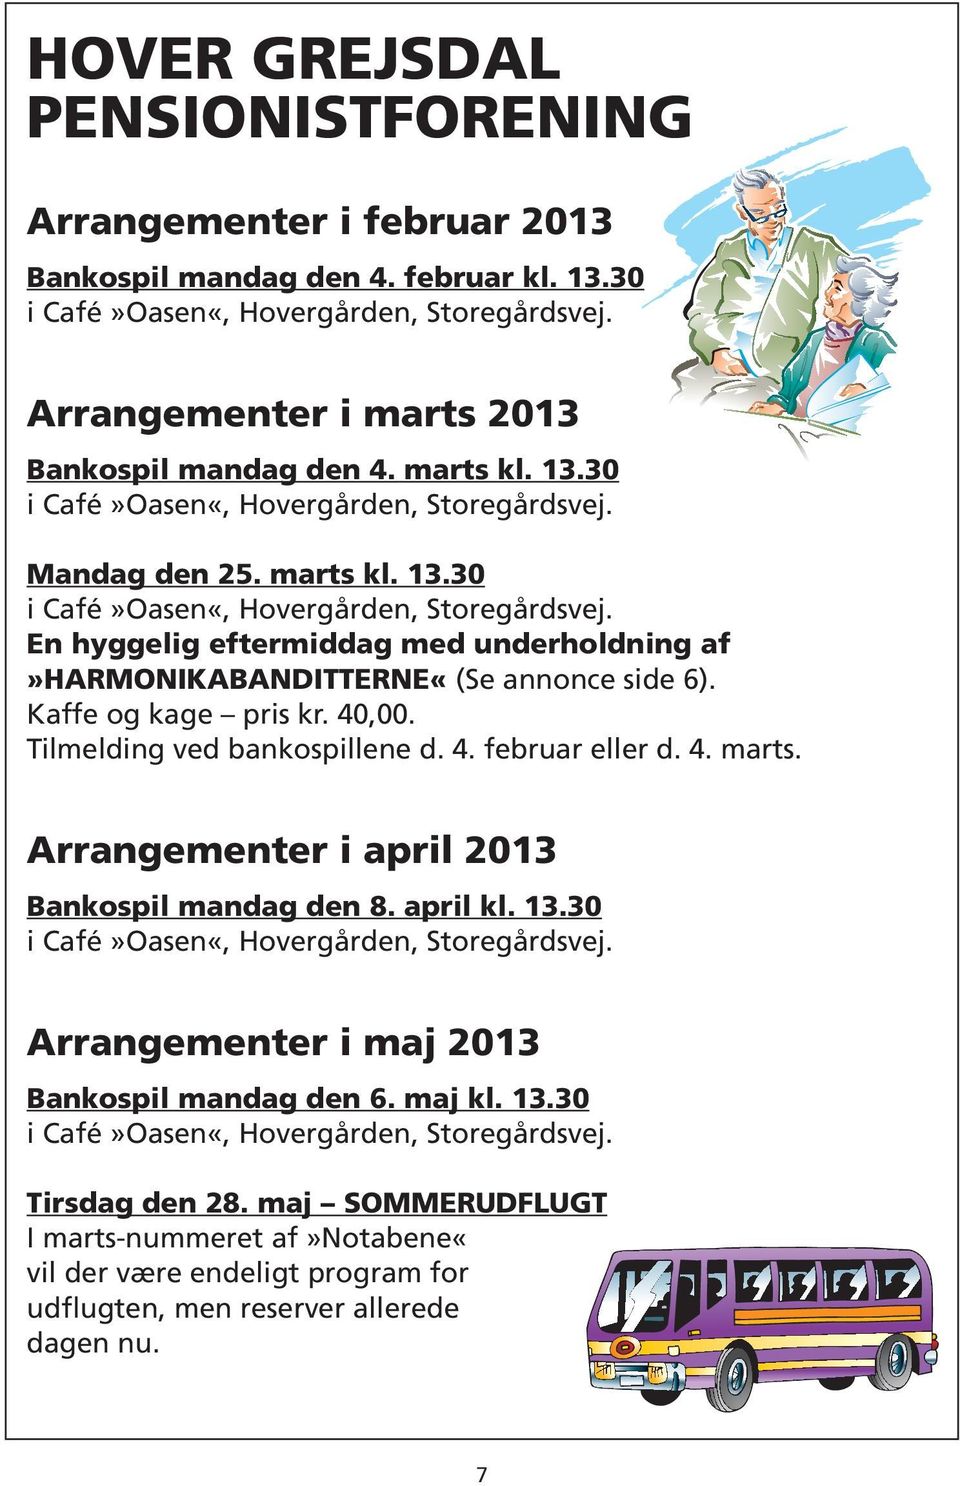 Kaffe og kage pris kr. 40,00. Tilmelding ved bankospillene d. 4. februar eller d. 4. marts. Arrangementer i april 2013 Bankospil mandag den 8. april kl. 13.